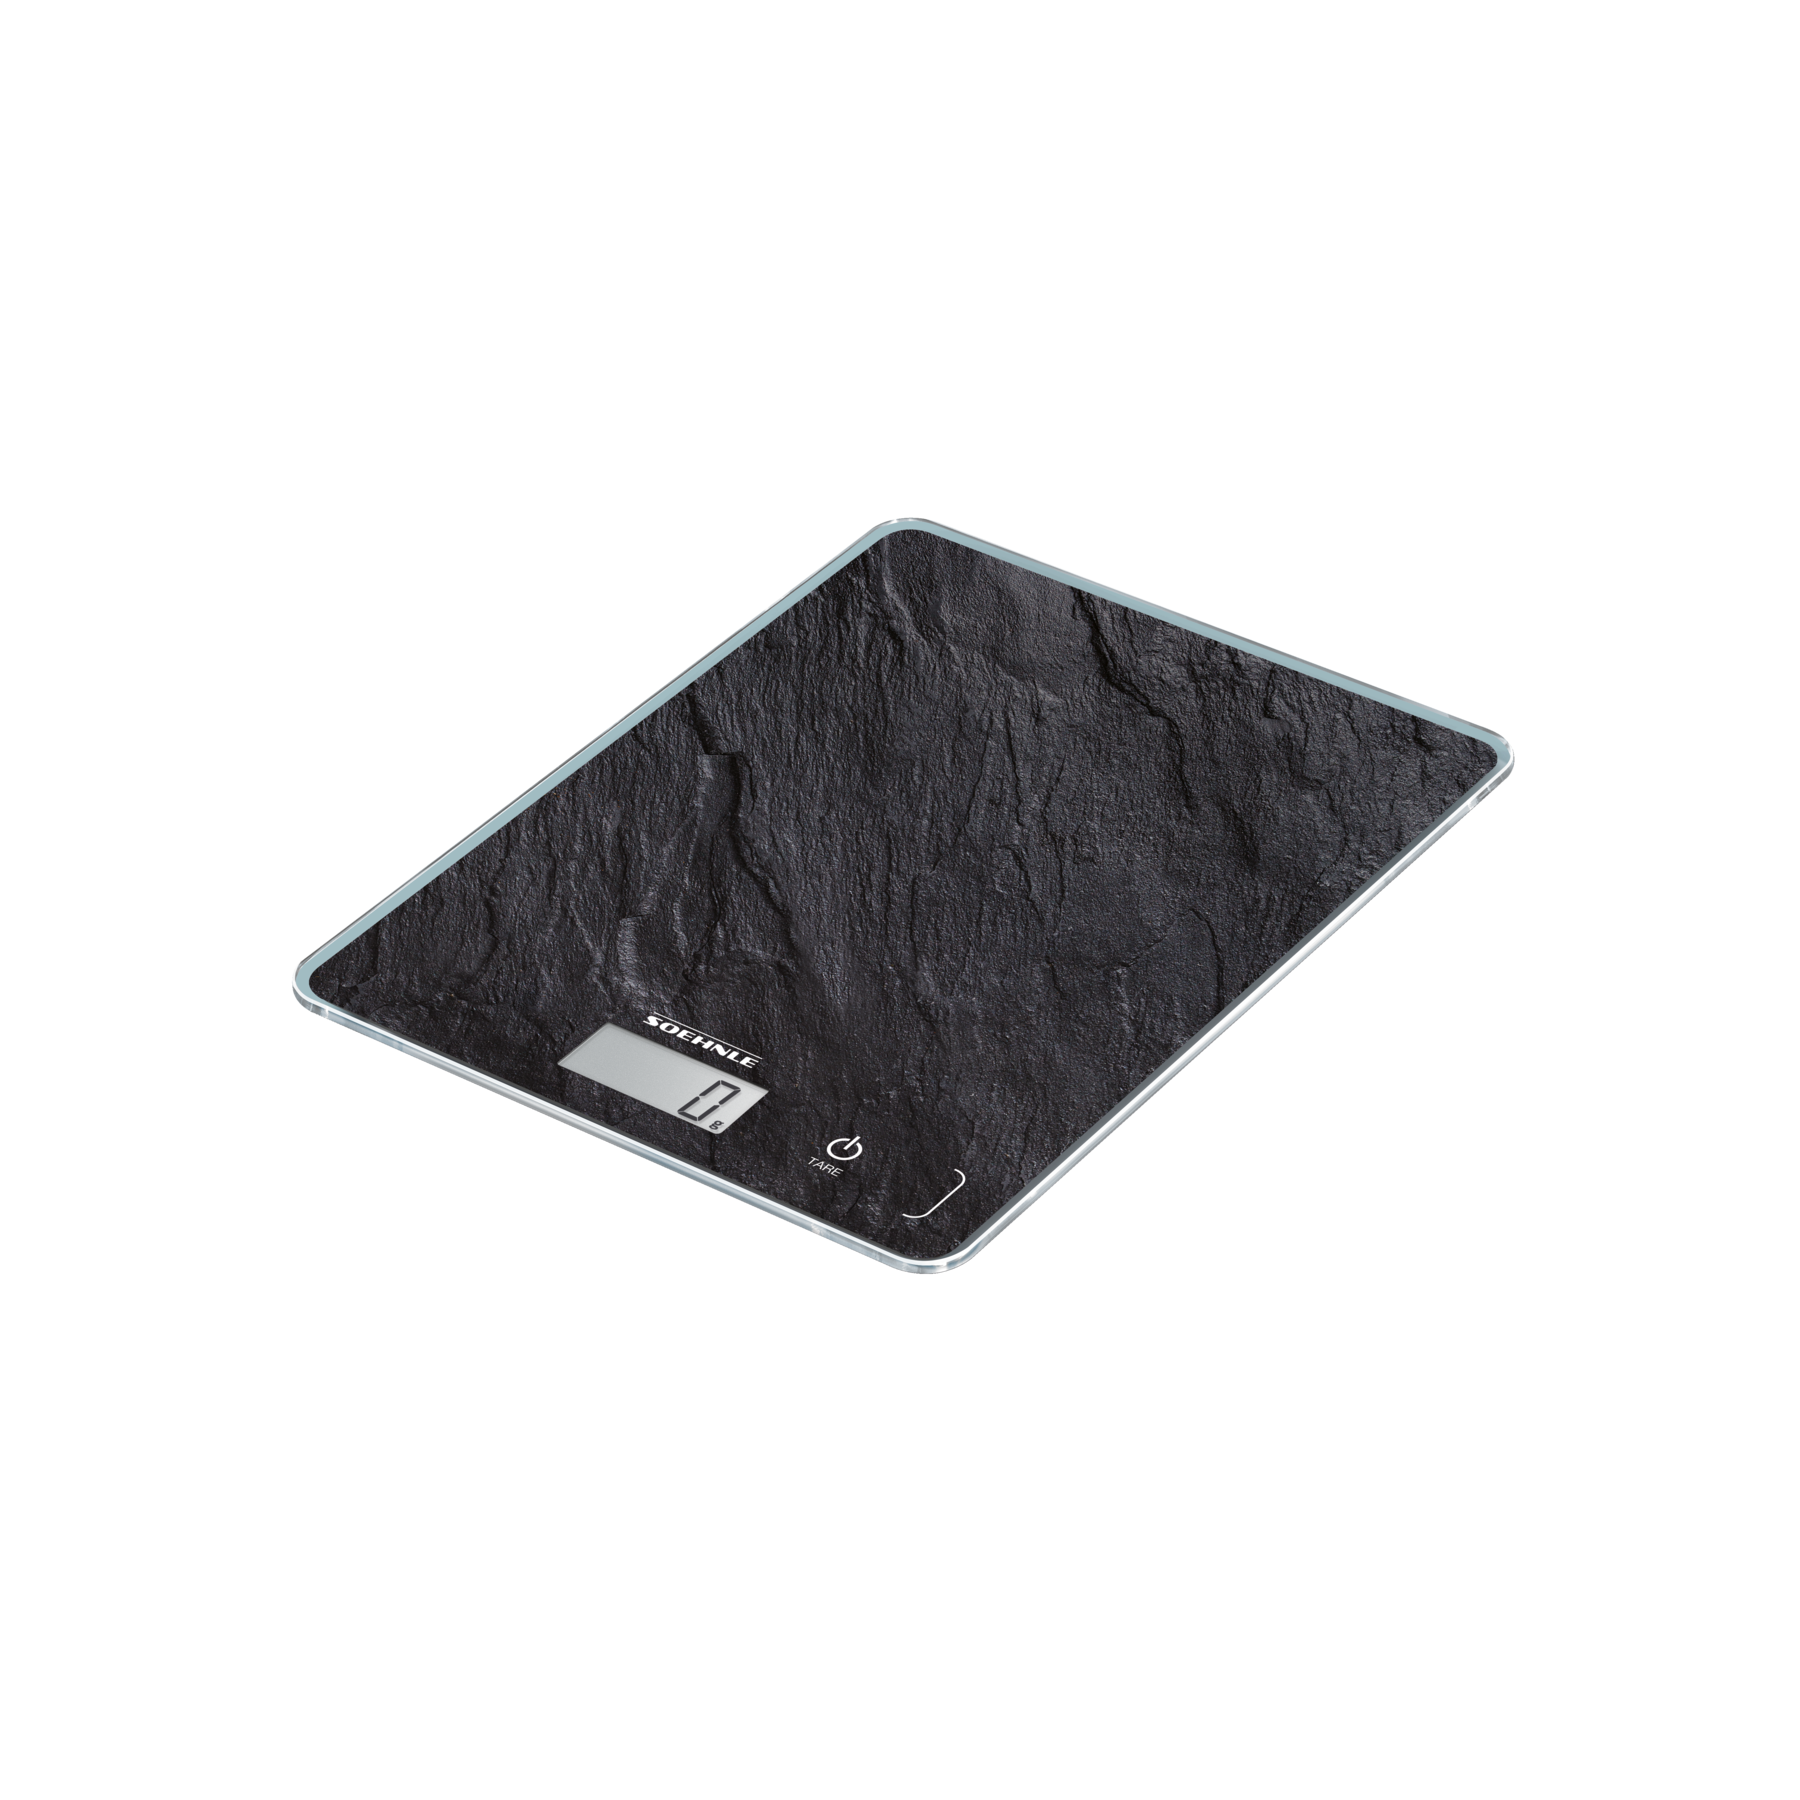 משקל מטבח יוקרתי בצבע שחור דמוי אבן דגם Page Compact 300 מבית SOEHNLE